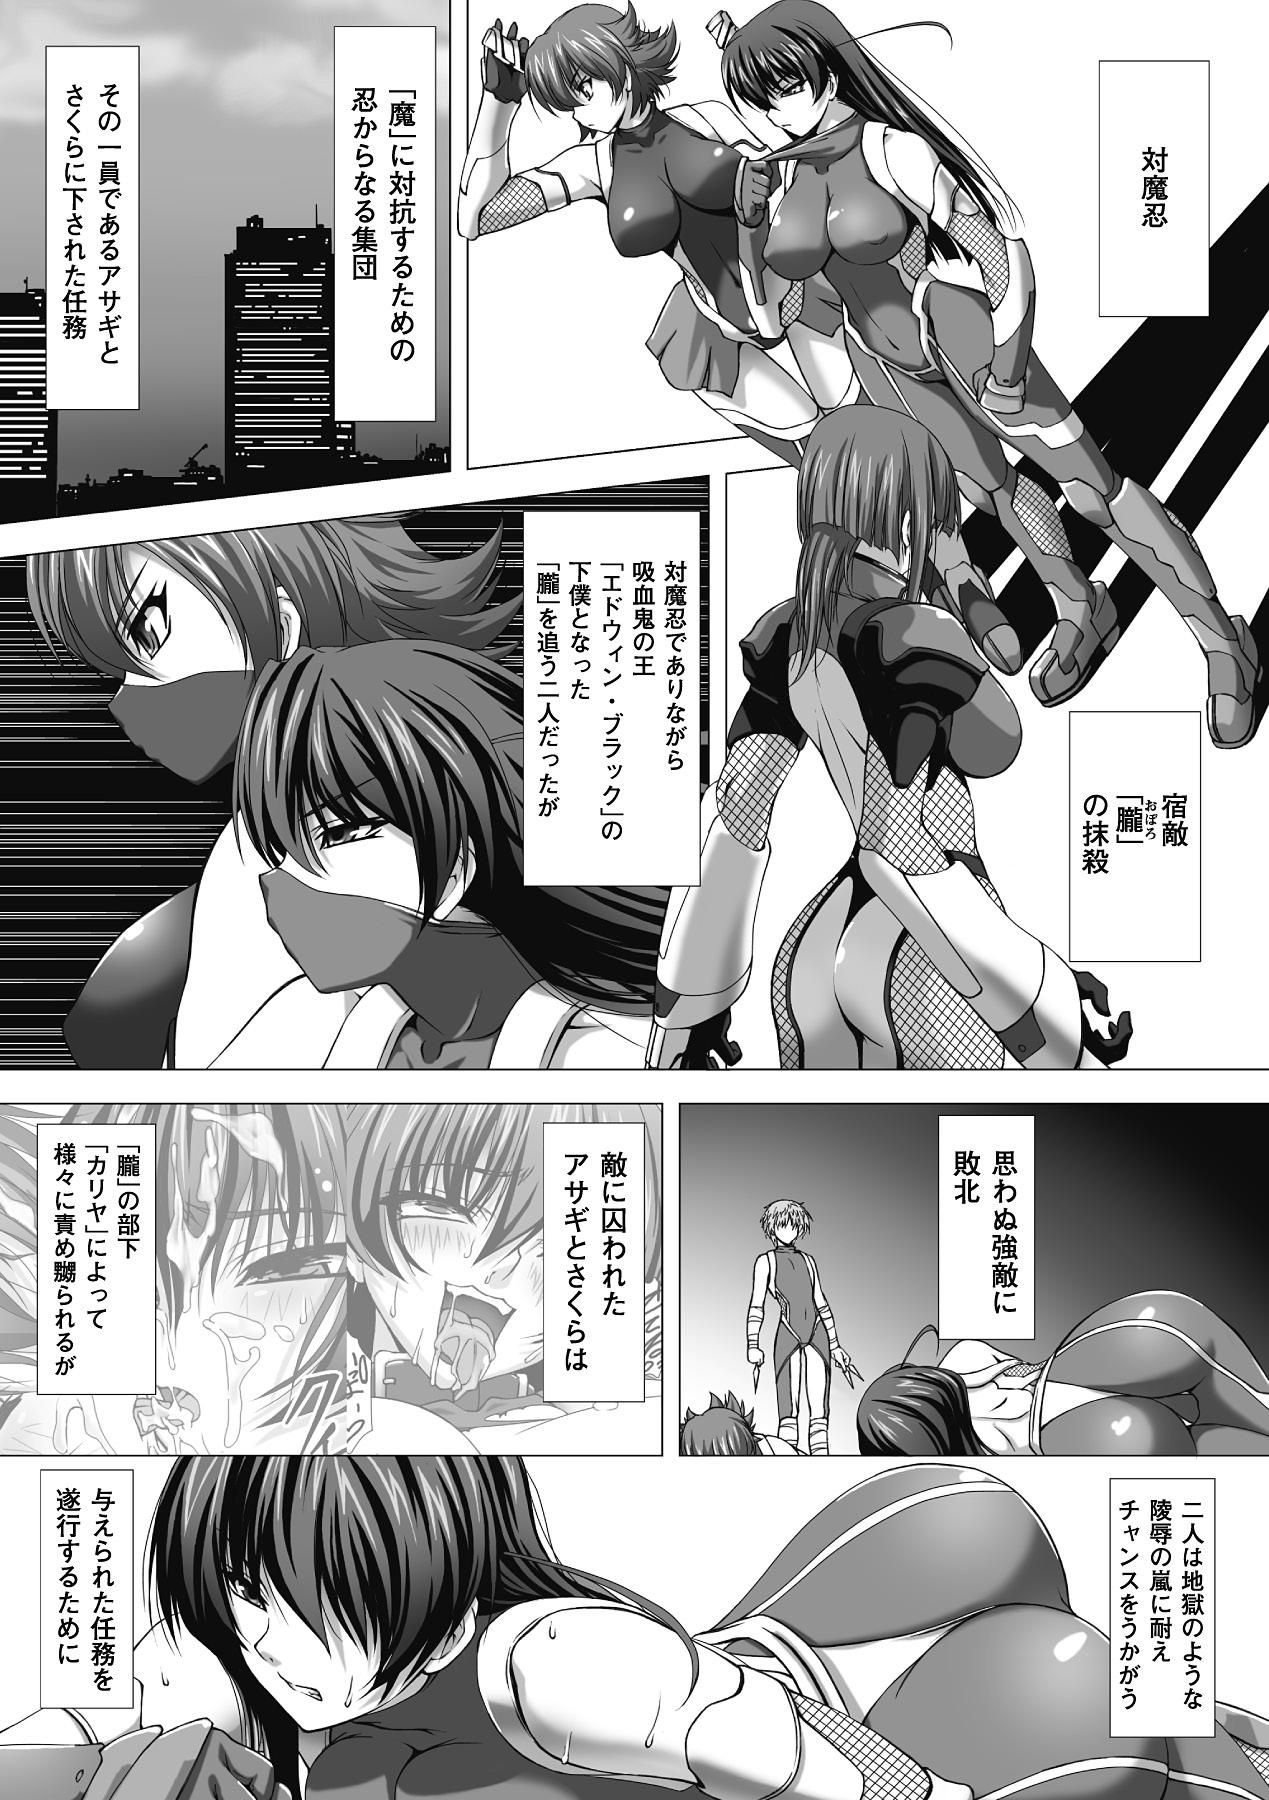 Com Megami Crisis 1 - Taimanin asagi Gay Averagedick - Page 4